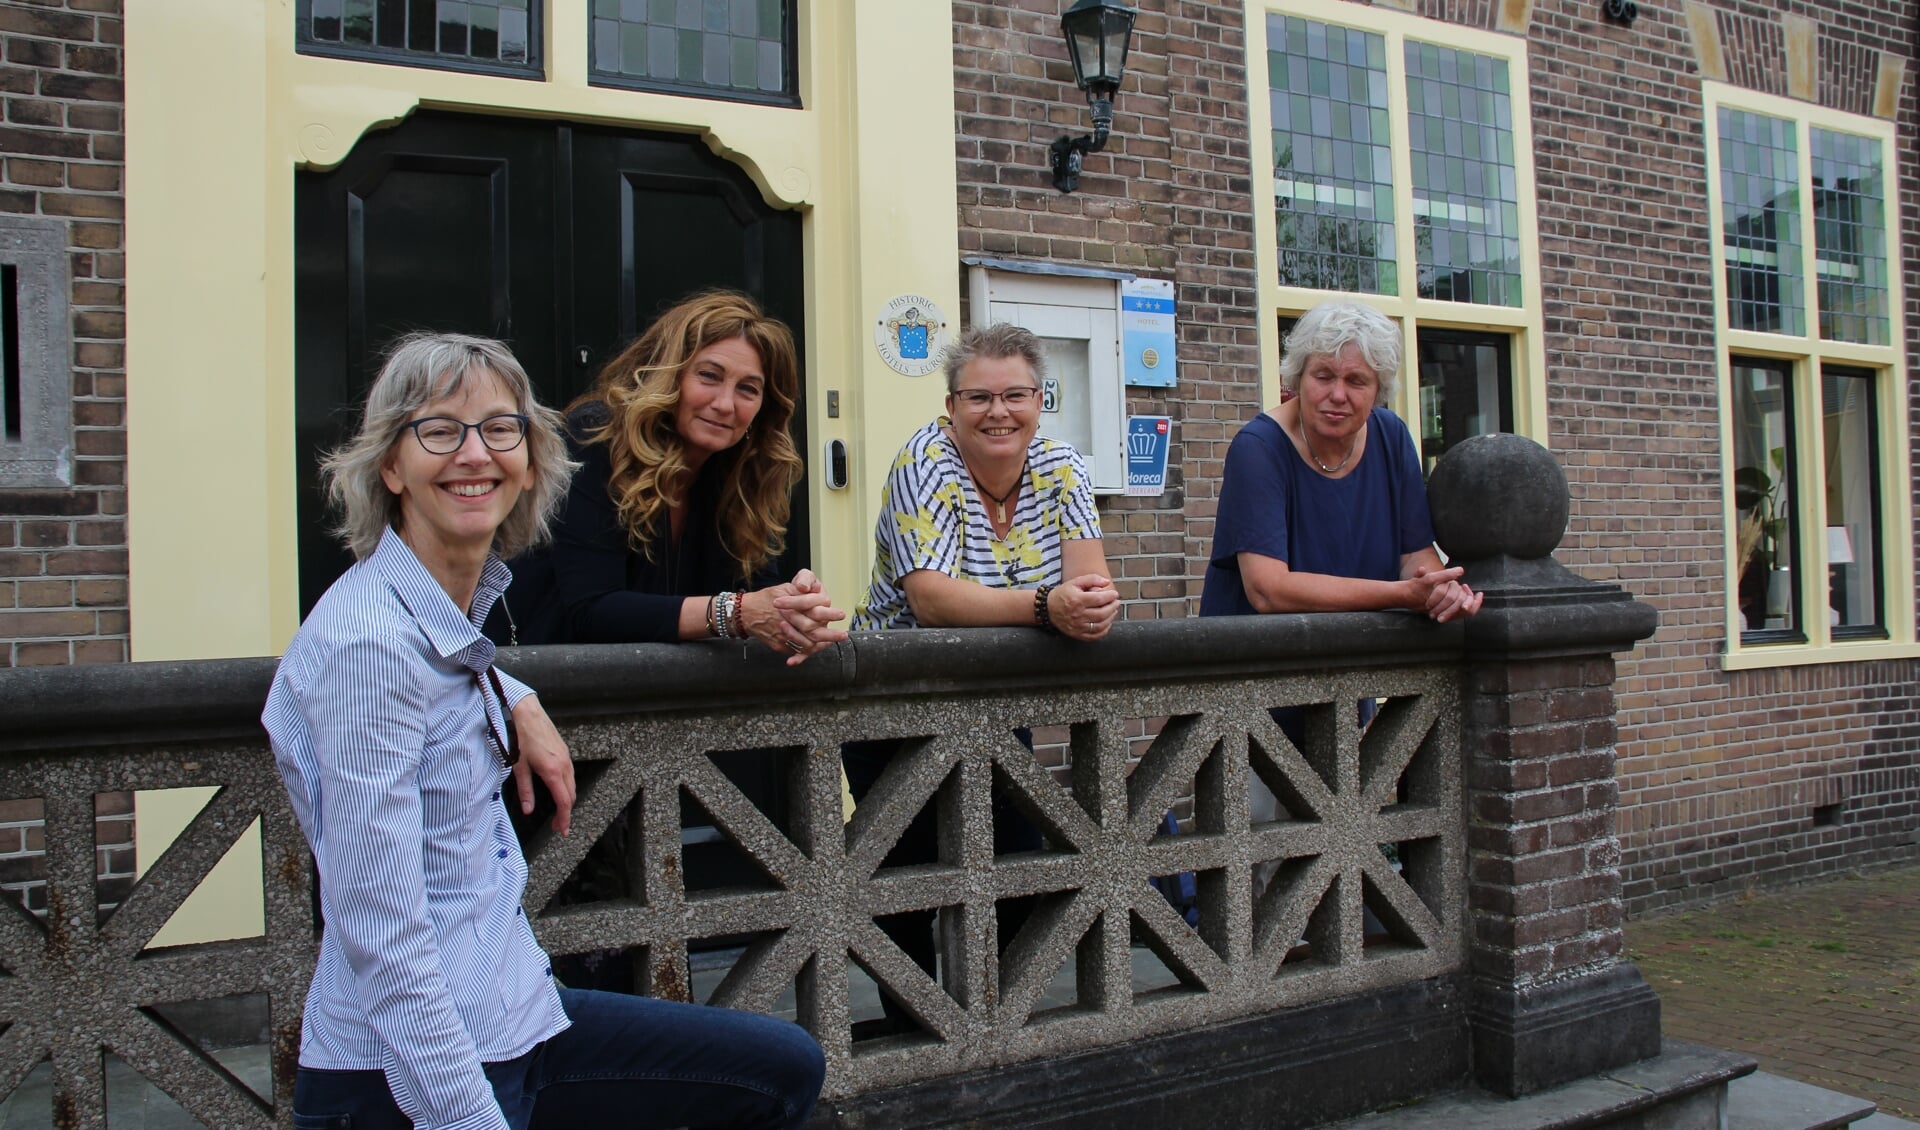 Vlnr: Martine Kool, Monique van Wanrooij, Hellen Ruiter, Els Tempelaars voor het oude Raadhuis aan de Dorpsstraat in Castricum.